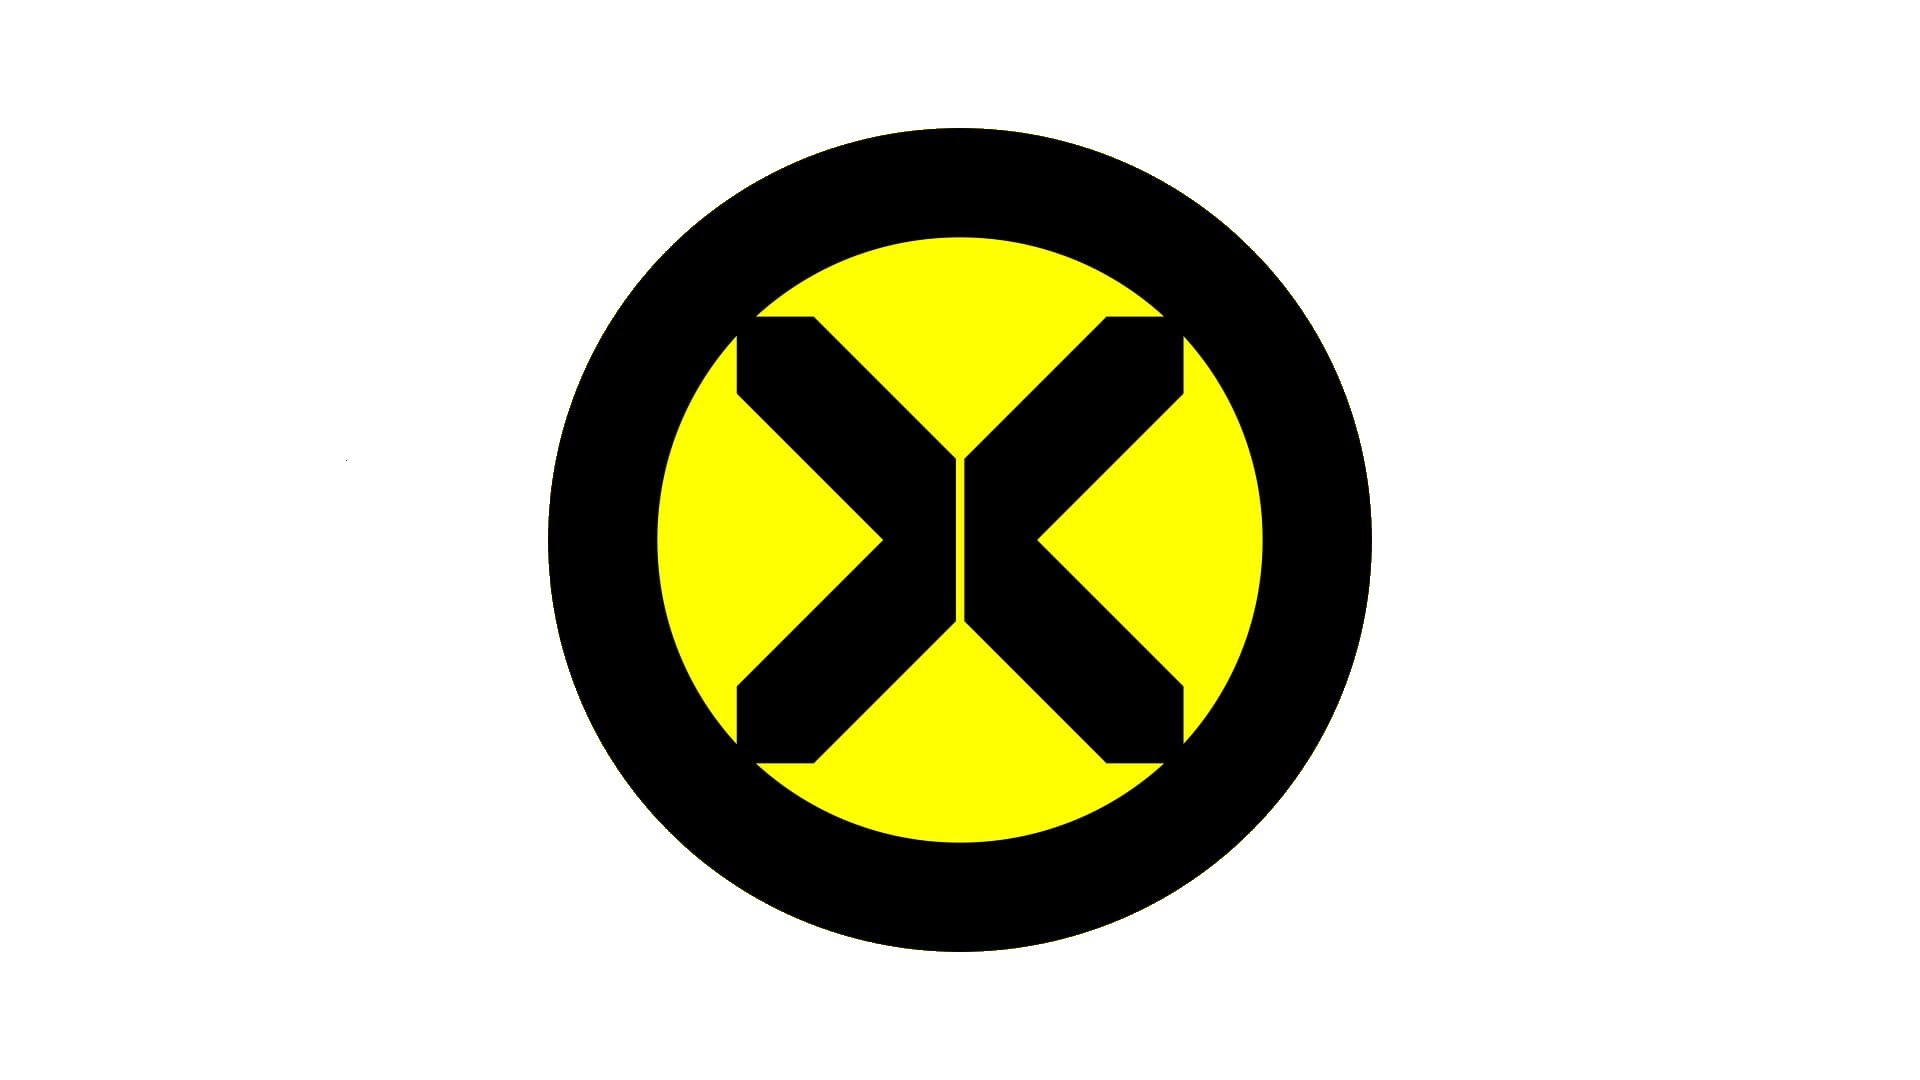 original x men symbol